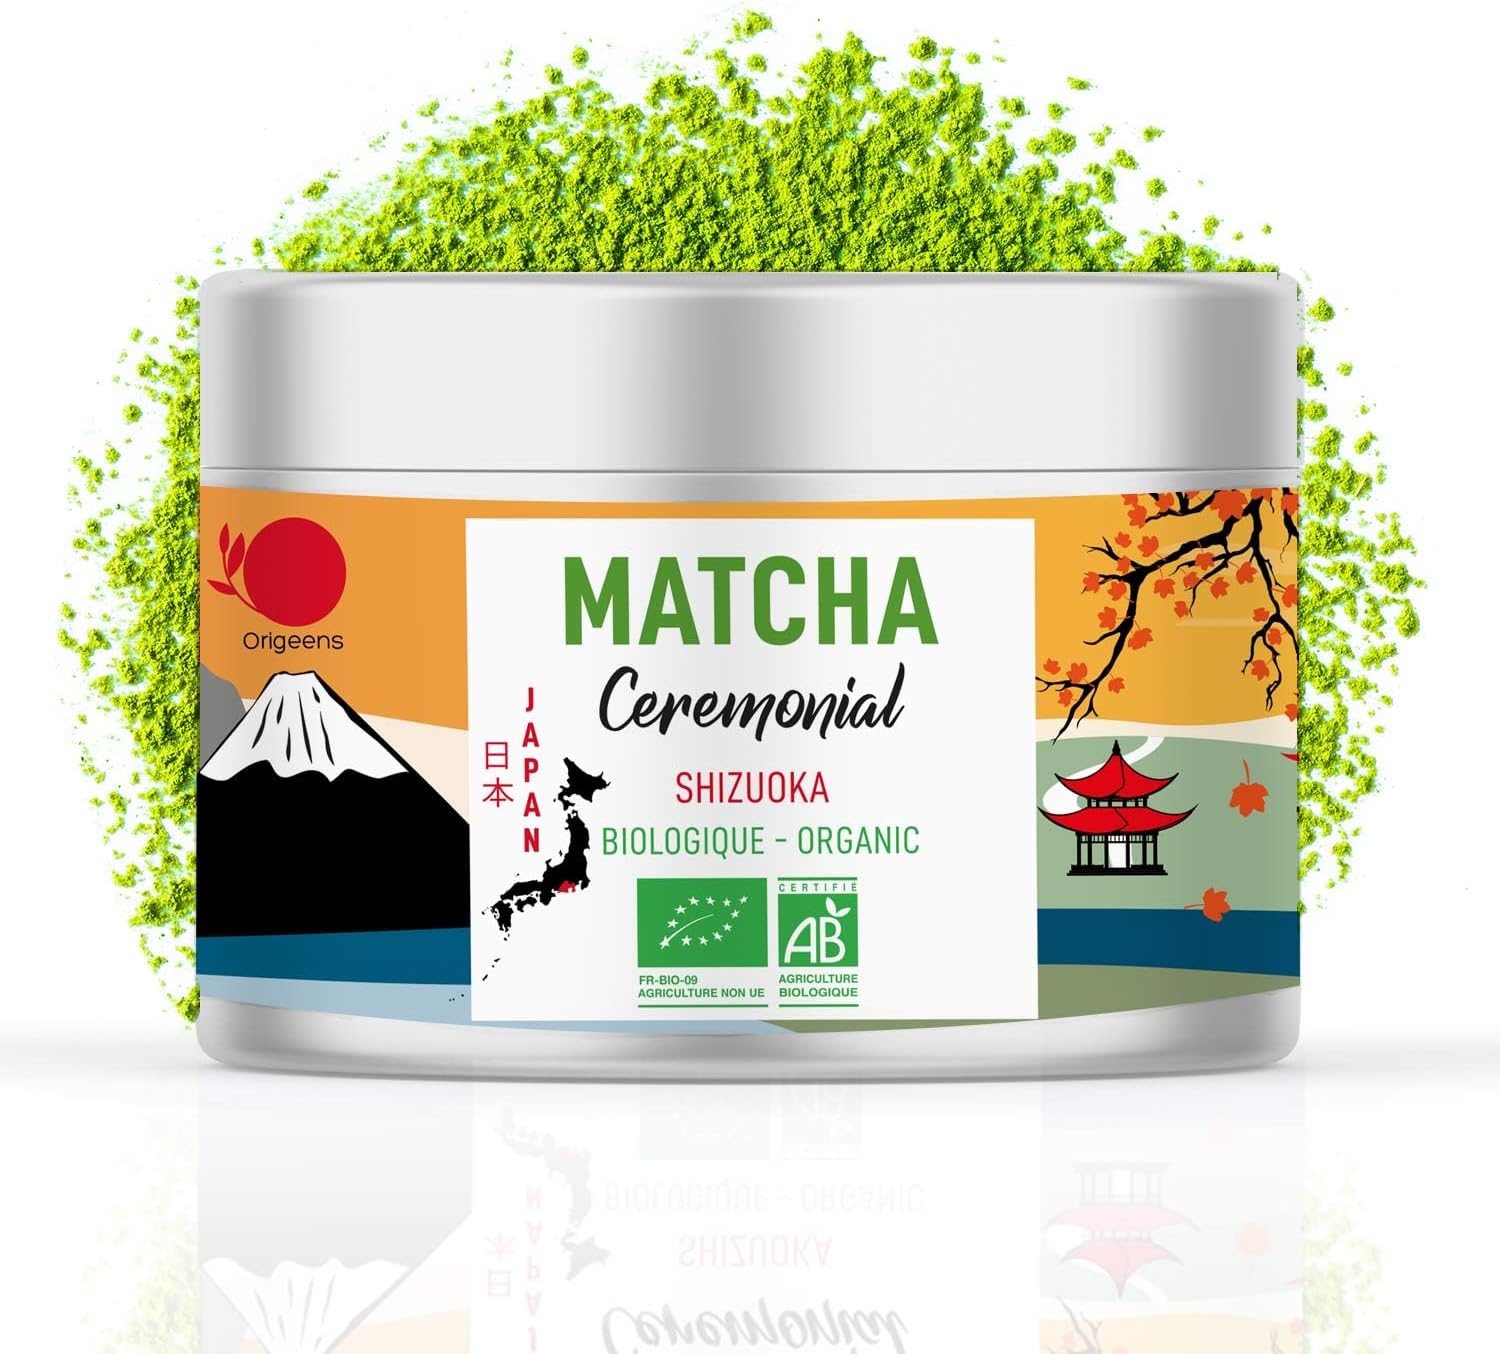 Matcha Anatae Bio - Premium 30g